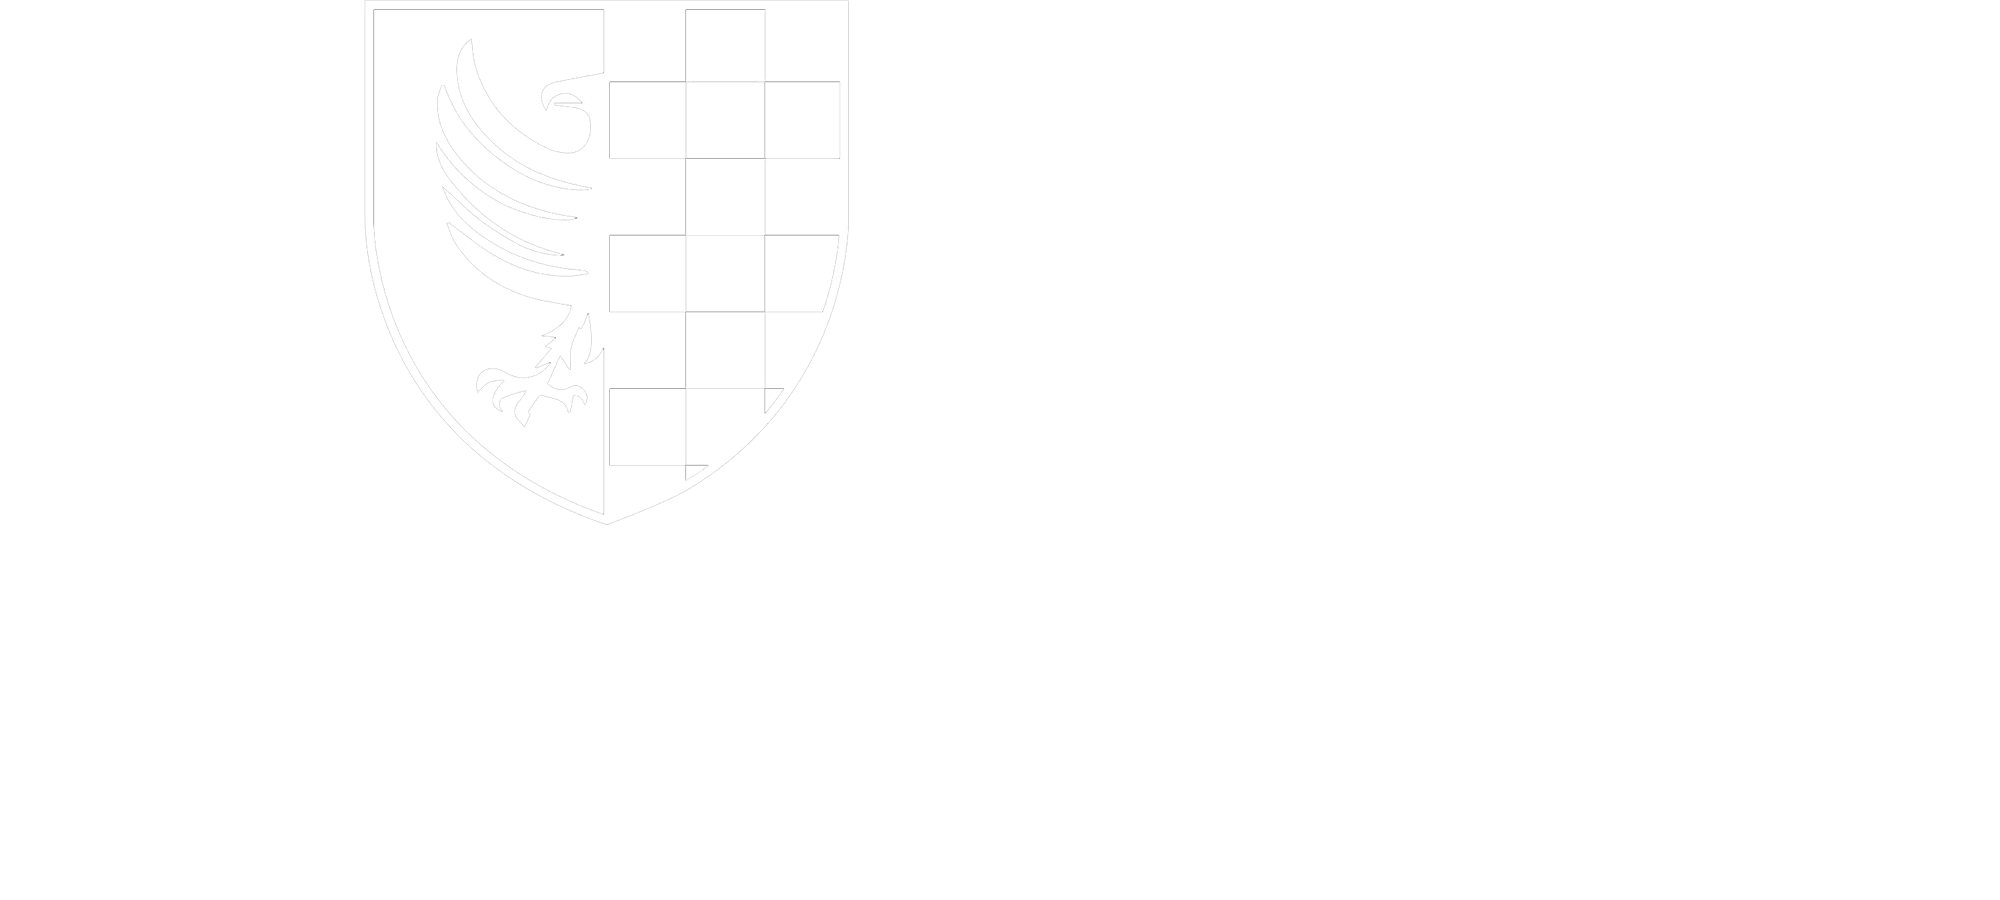 Residenza Farinati - Montecatini Alto (PT)